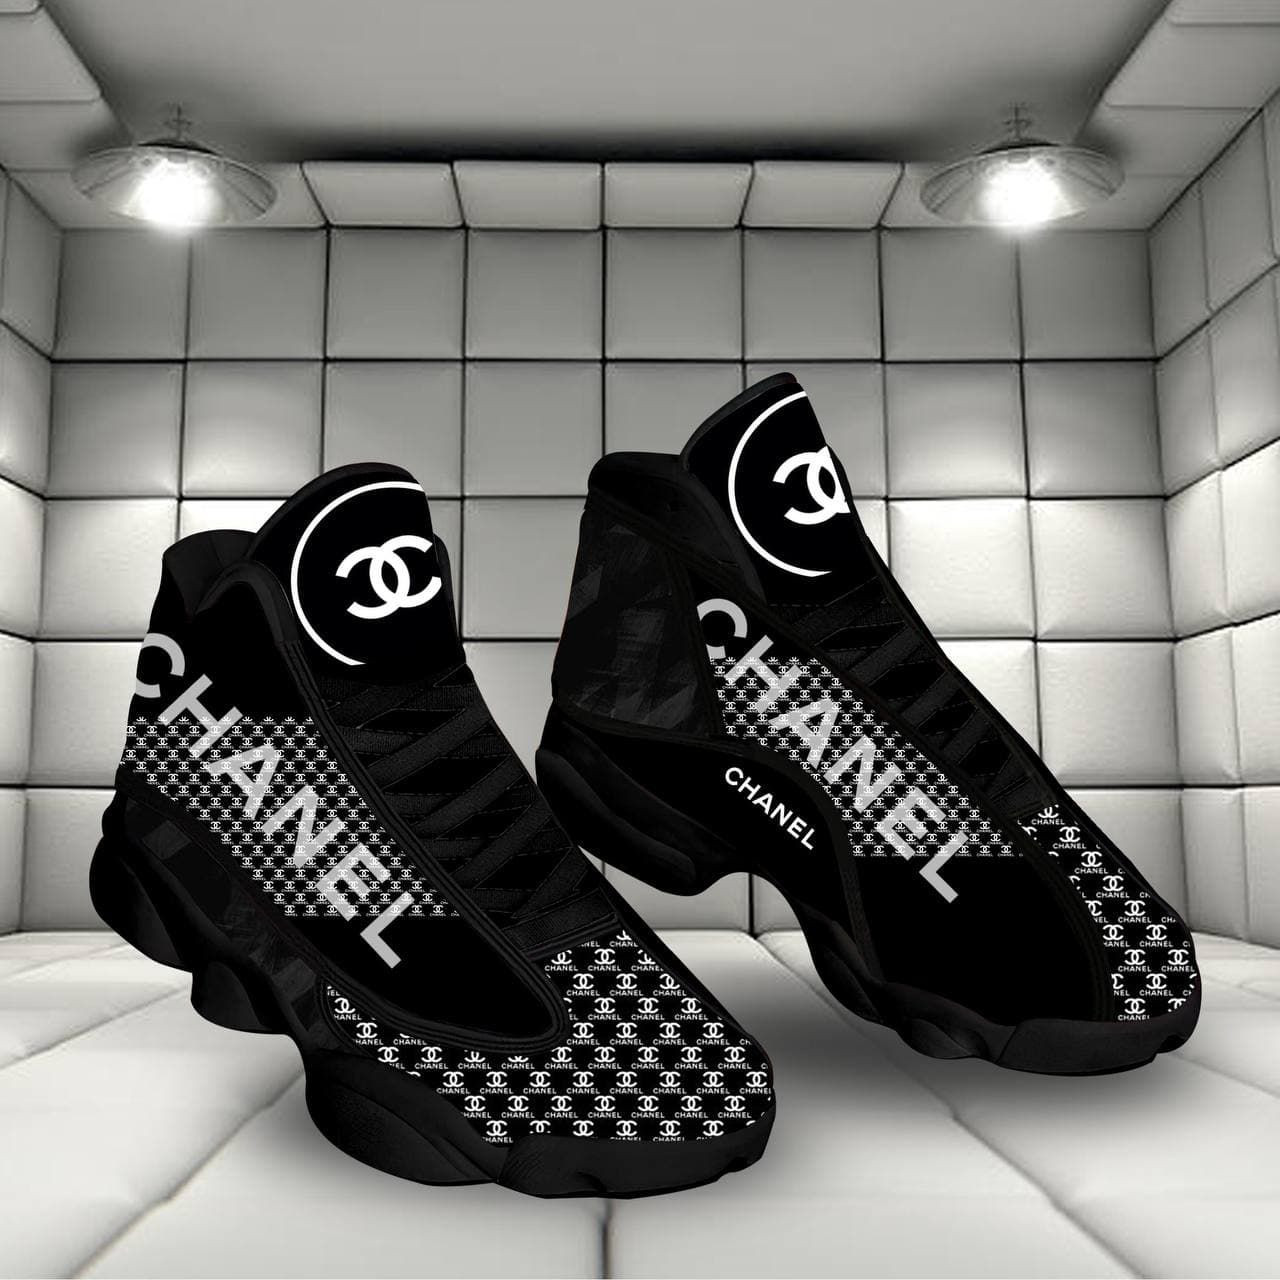 Chanel luxury form air jordan 13 shoes sneaker - sneaker hot shoes -gif for fan like sneaker - men-11